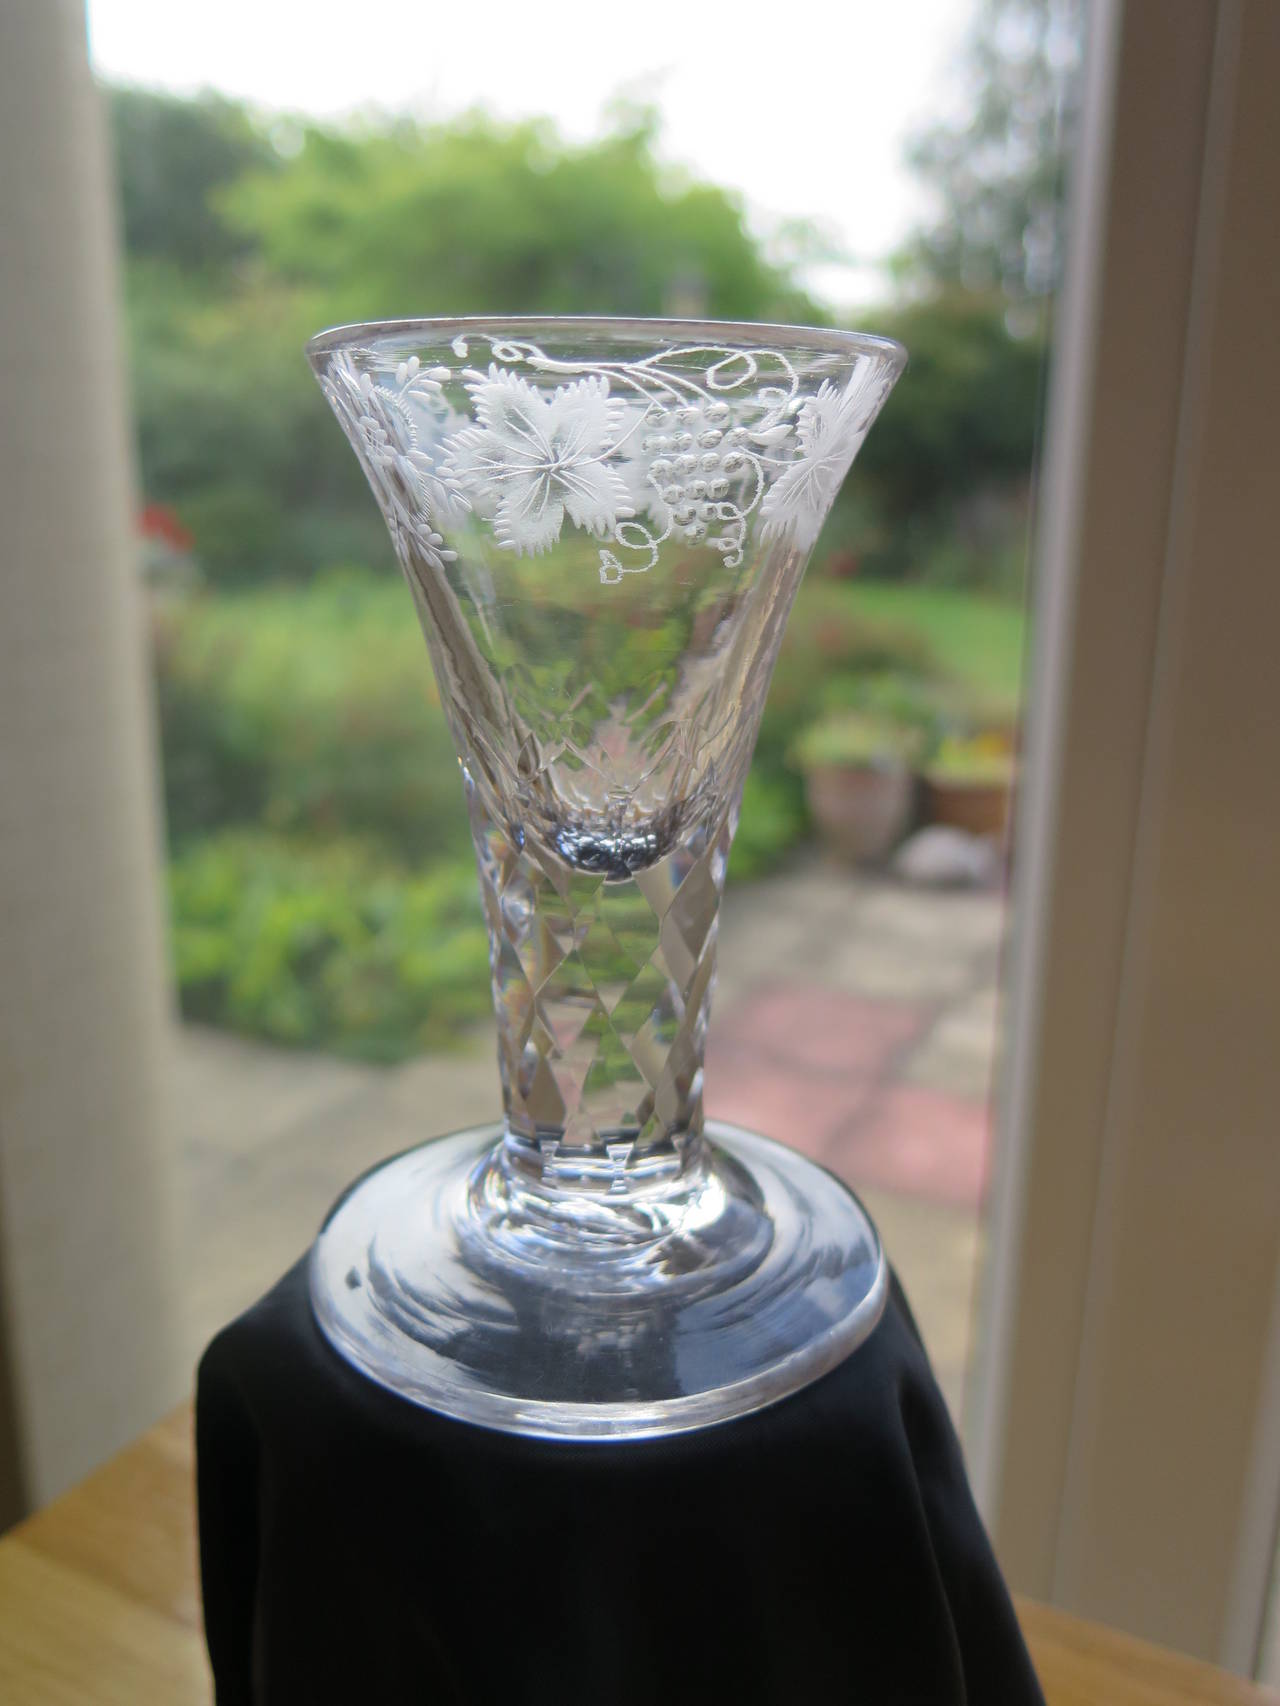 Il s'agit d'un verre à boire anglais, soufflé à la main, fabriqué à partir de verre au plomb au XVIIIe siècle, vers 1785.

Les verres à pied courts, lourds et épais comme celui-ci, avec un pied épais, sont connus sous le nom de verres à feu, car ils